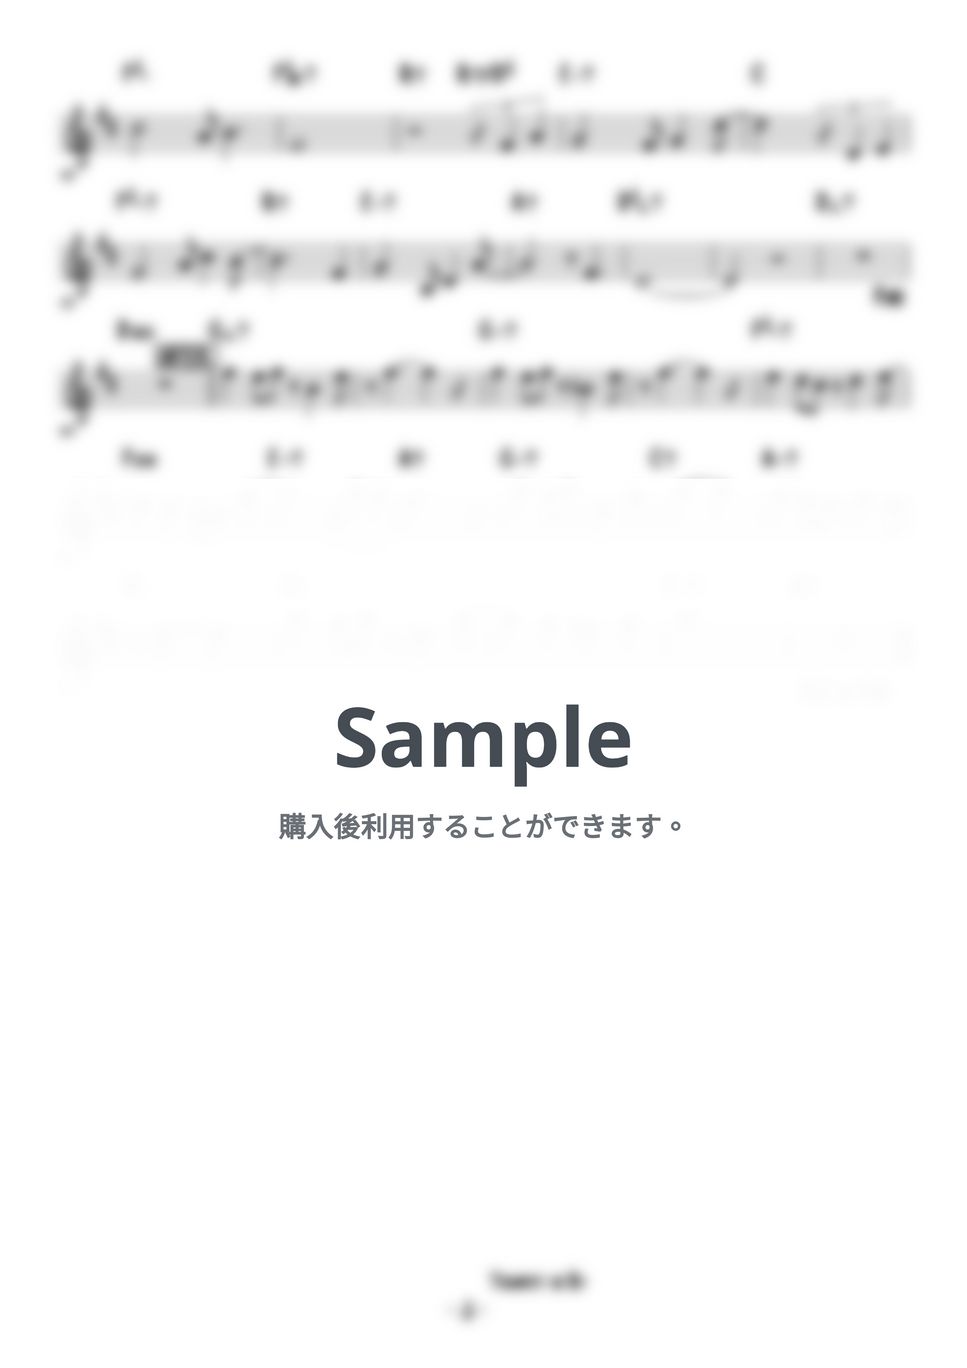 ルパン三世 - ラブスコール (Love Squall) (トランペットメロディー楽譜) by 高田将利